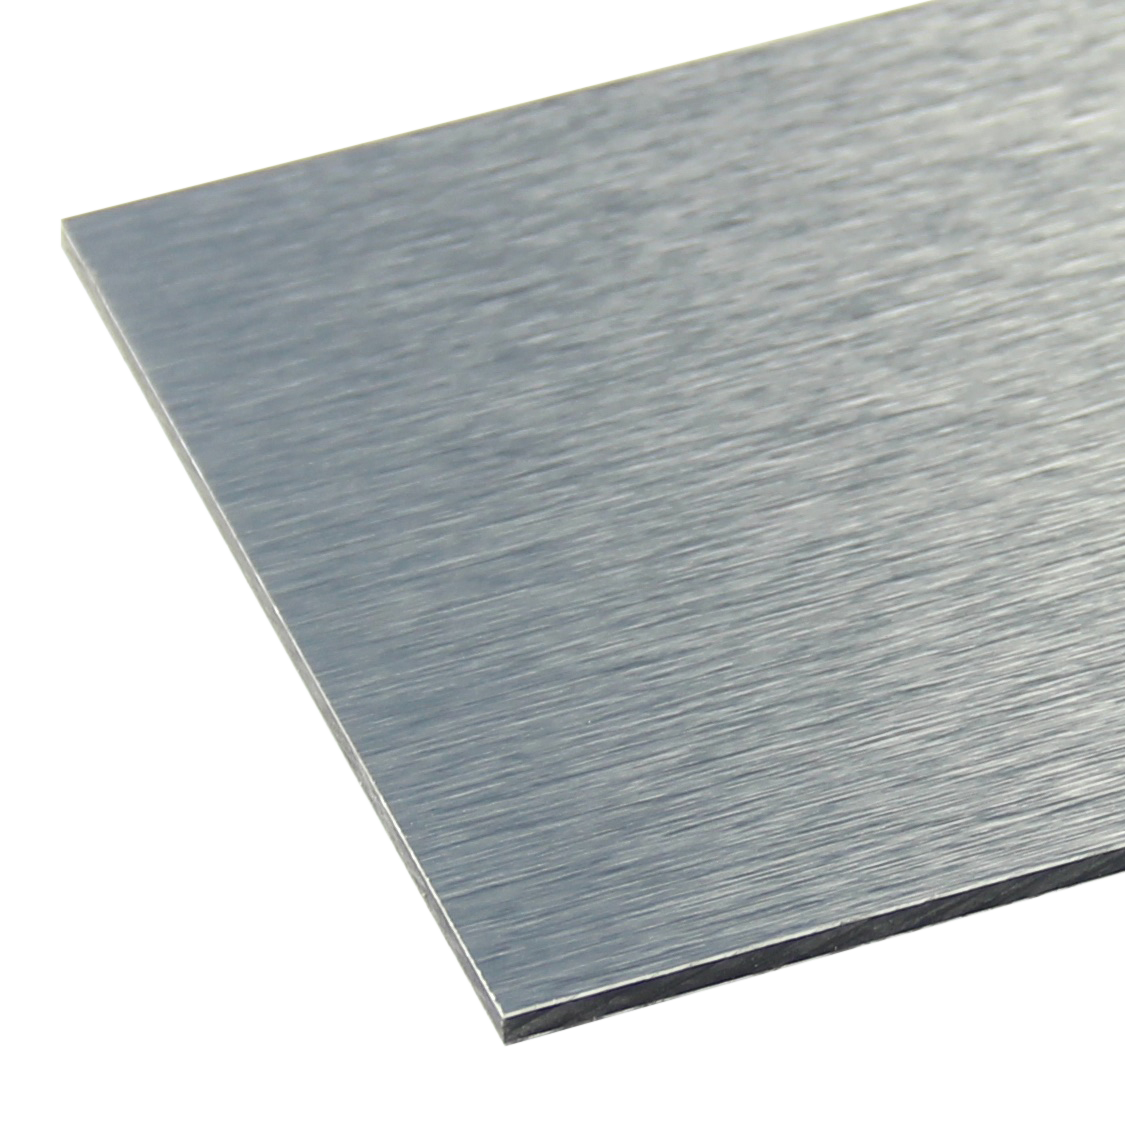 Alupanel Brushed Aluminium Sheet